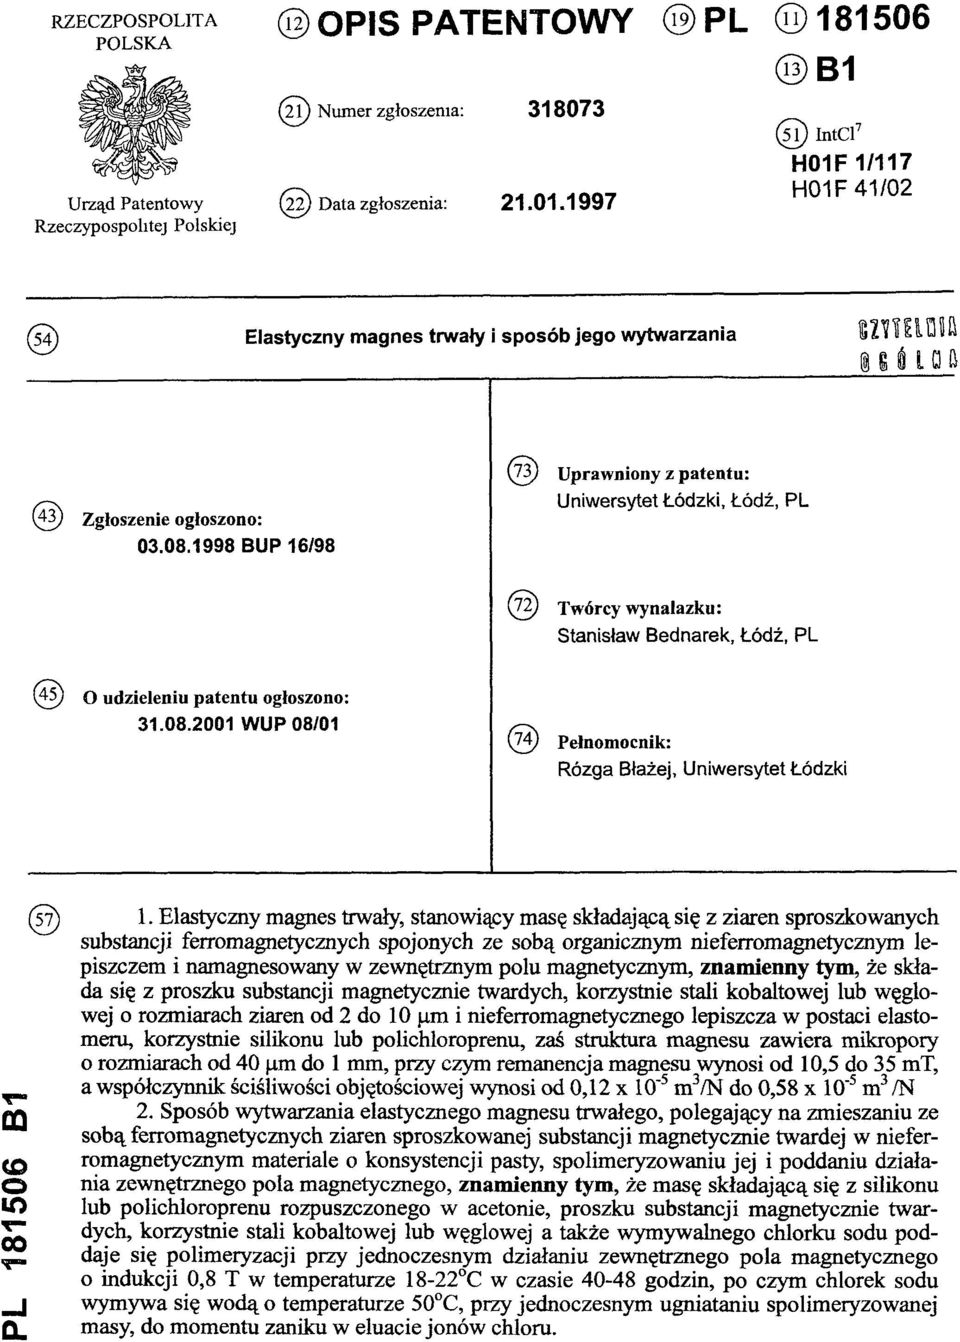 1998 BUP 16/98 (73) Uprawniony z patentu: Uniwersytet Łódzki, Łódź, PL (72) Twórcy wynalazku: Stanisław Bednarek, Łódź, PL (45) O udzieleniu patentu ogłoszono: 31.08.